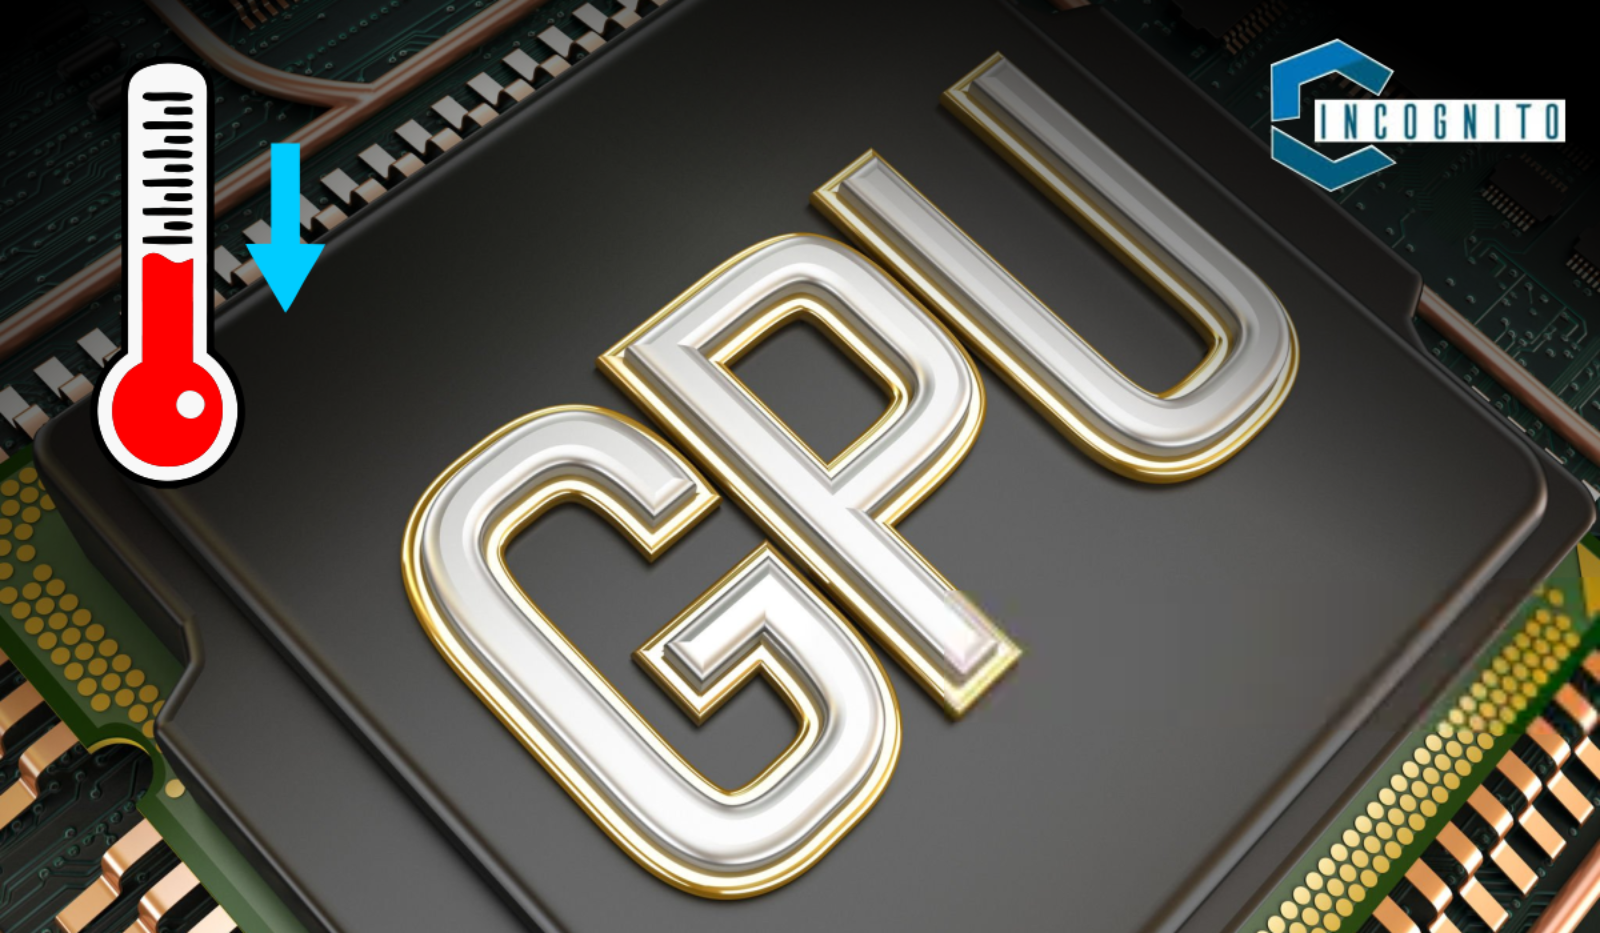 How to Check GPU Temp?